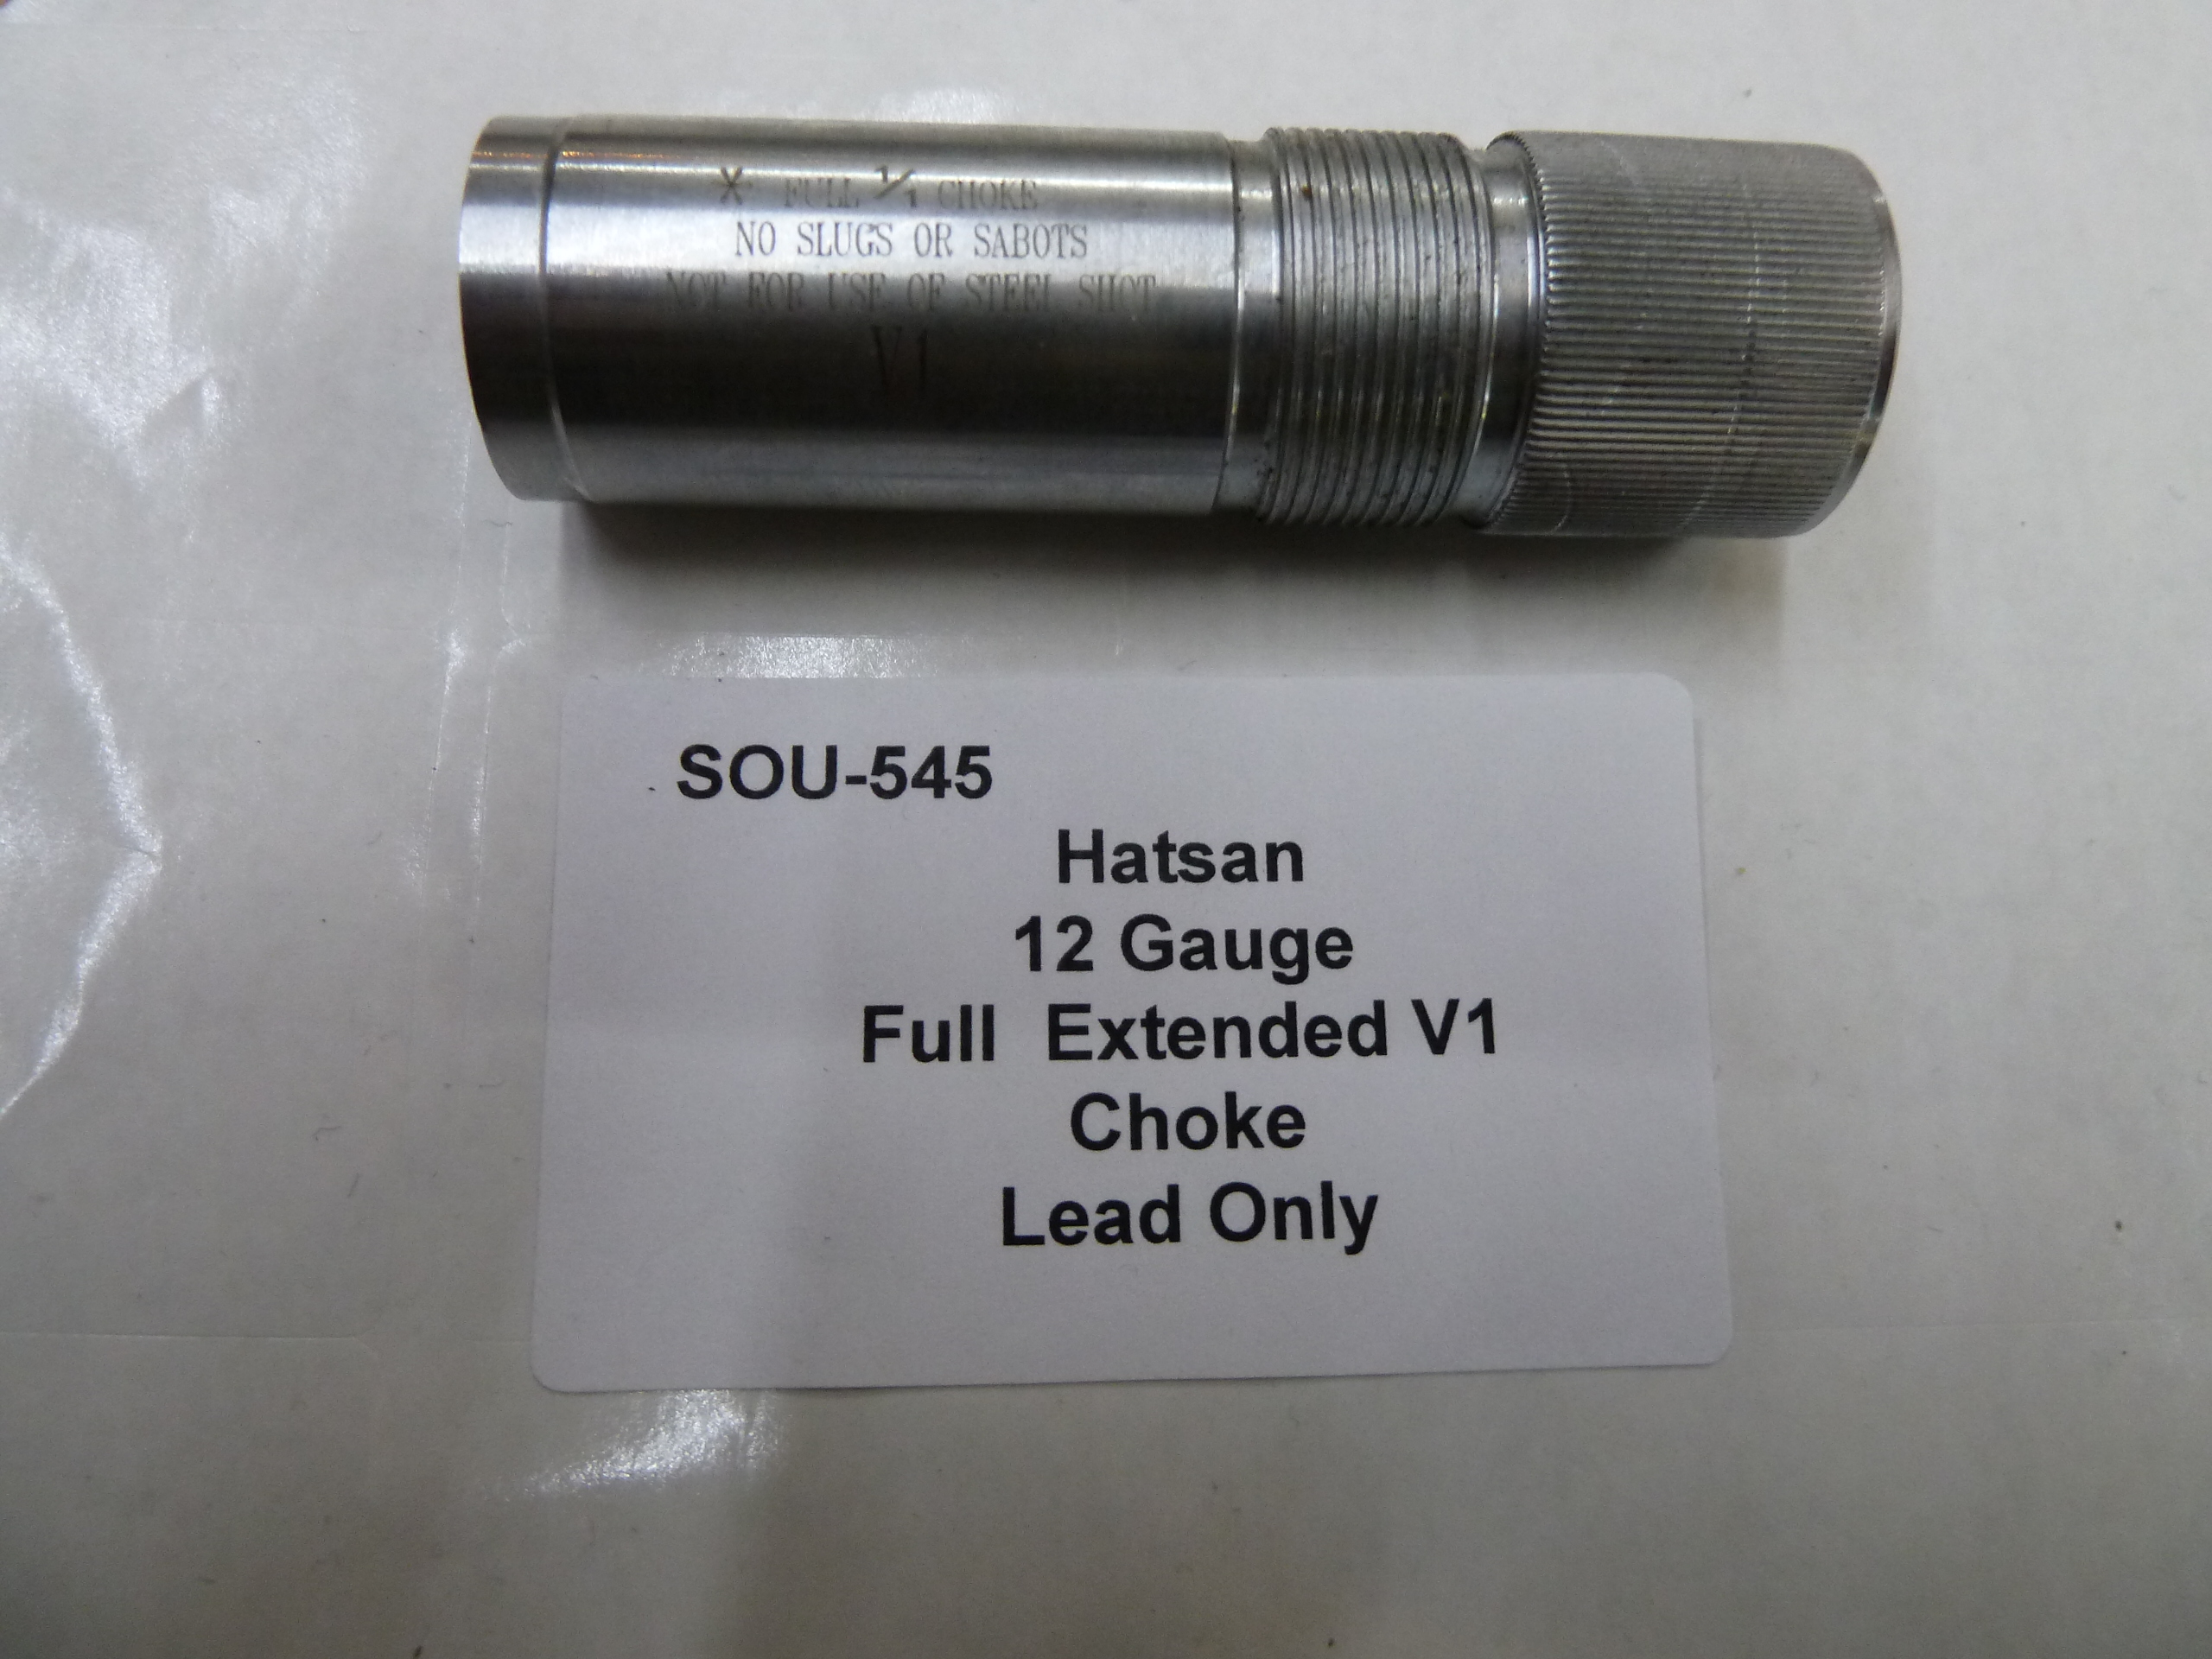 Hatsan 12 gauge choke Full extended V1